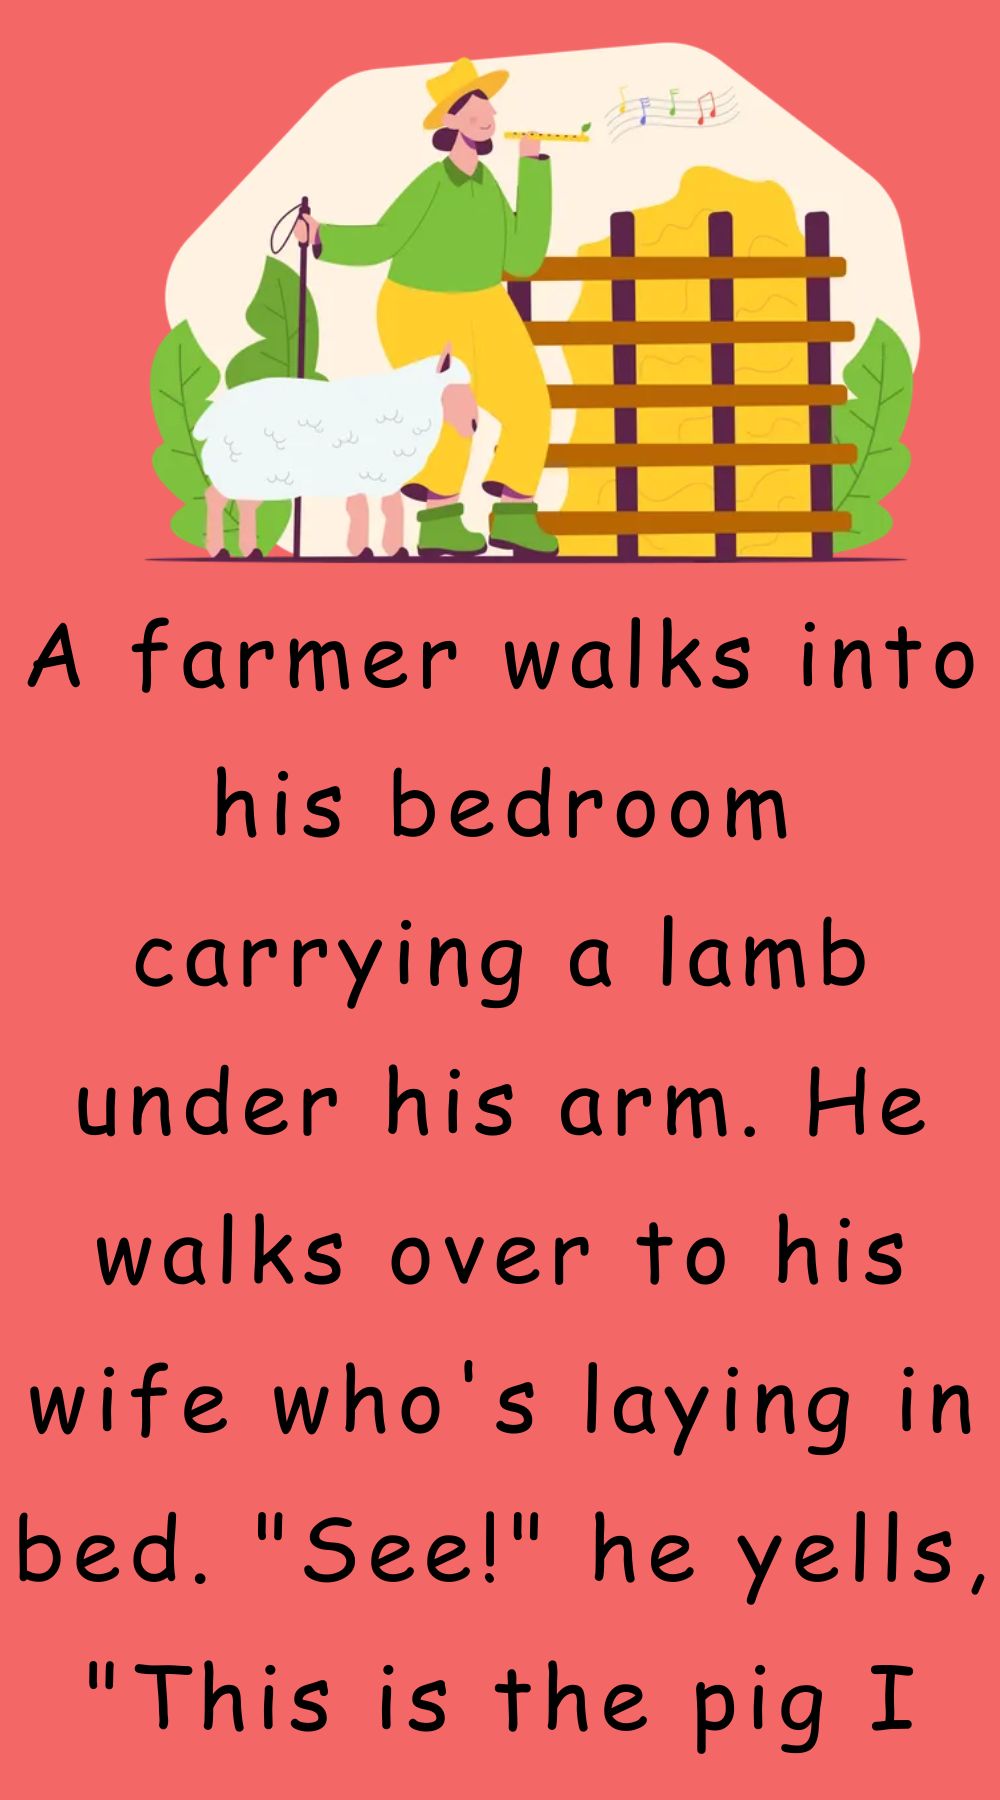 A farmer walks into his bedroom carrying a lamb